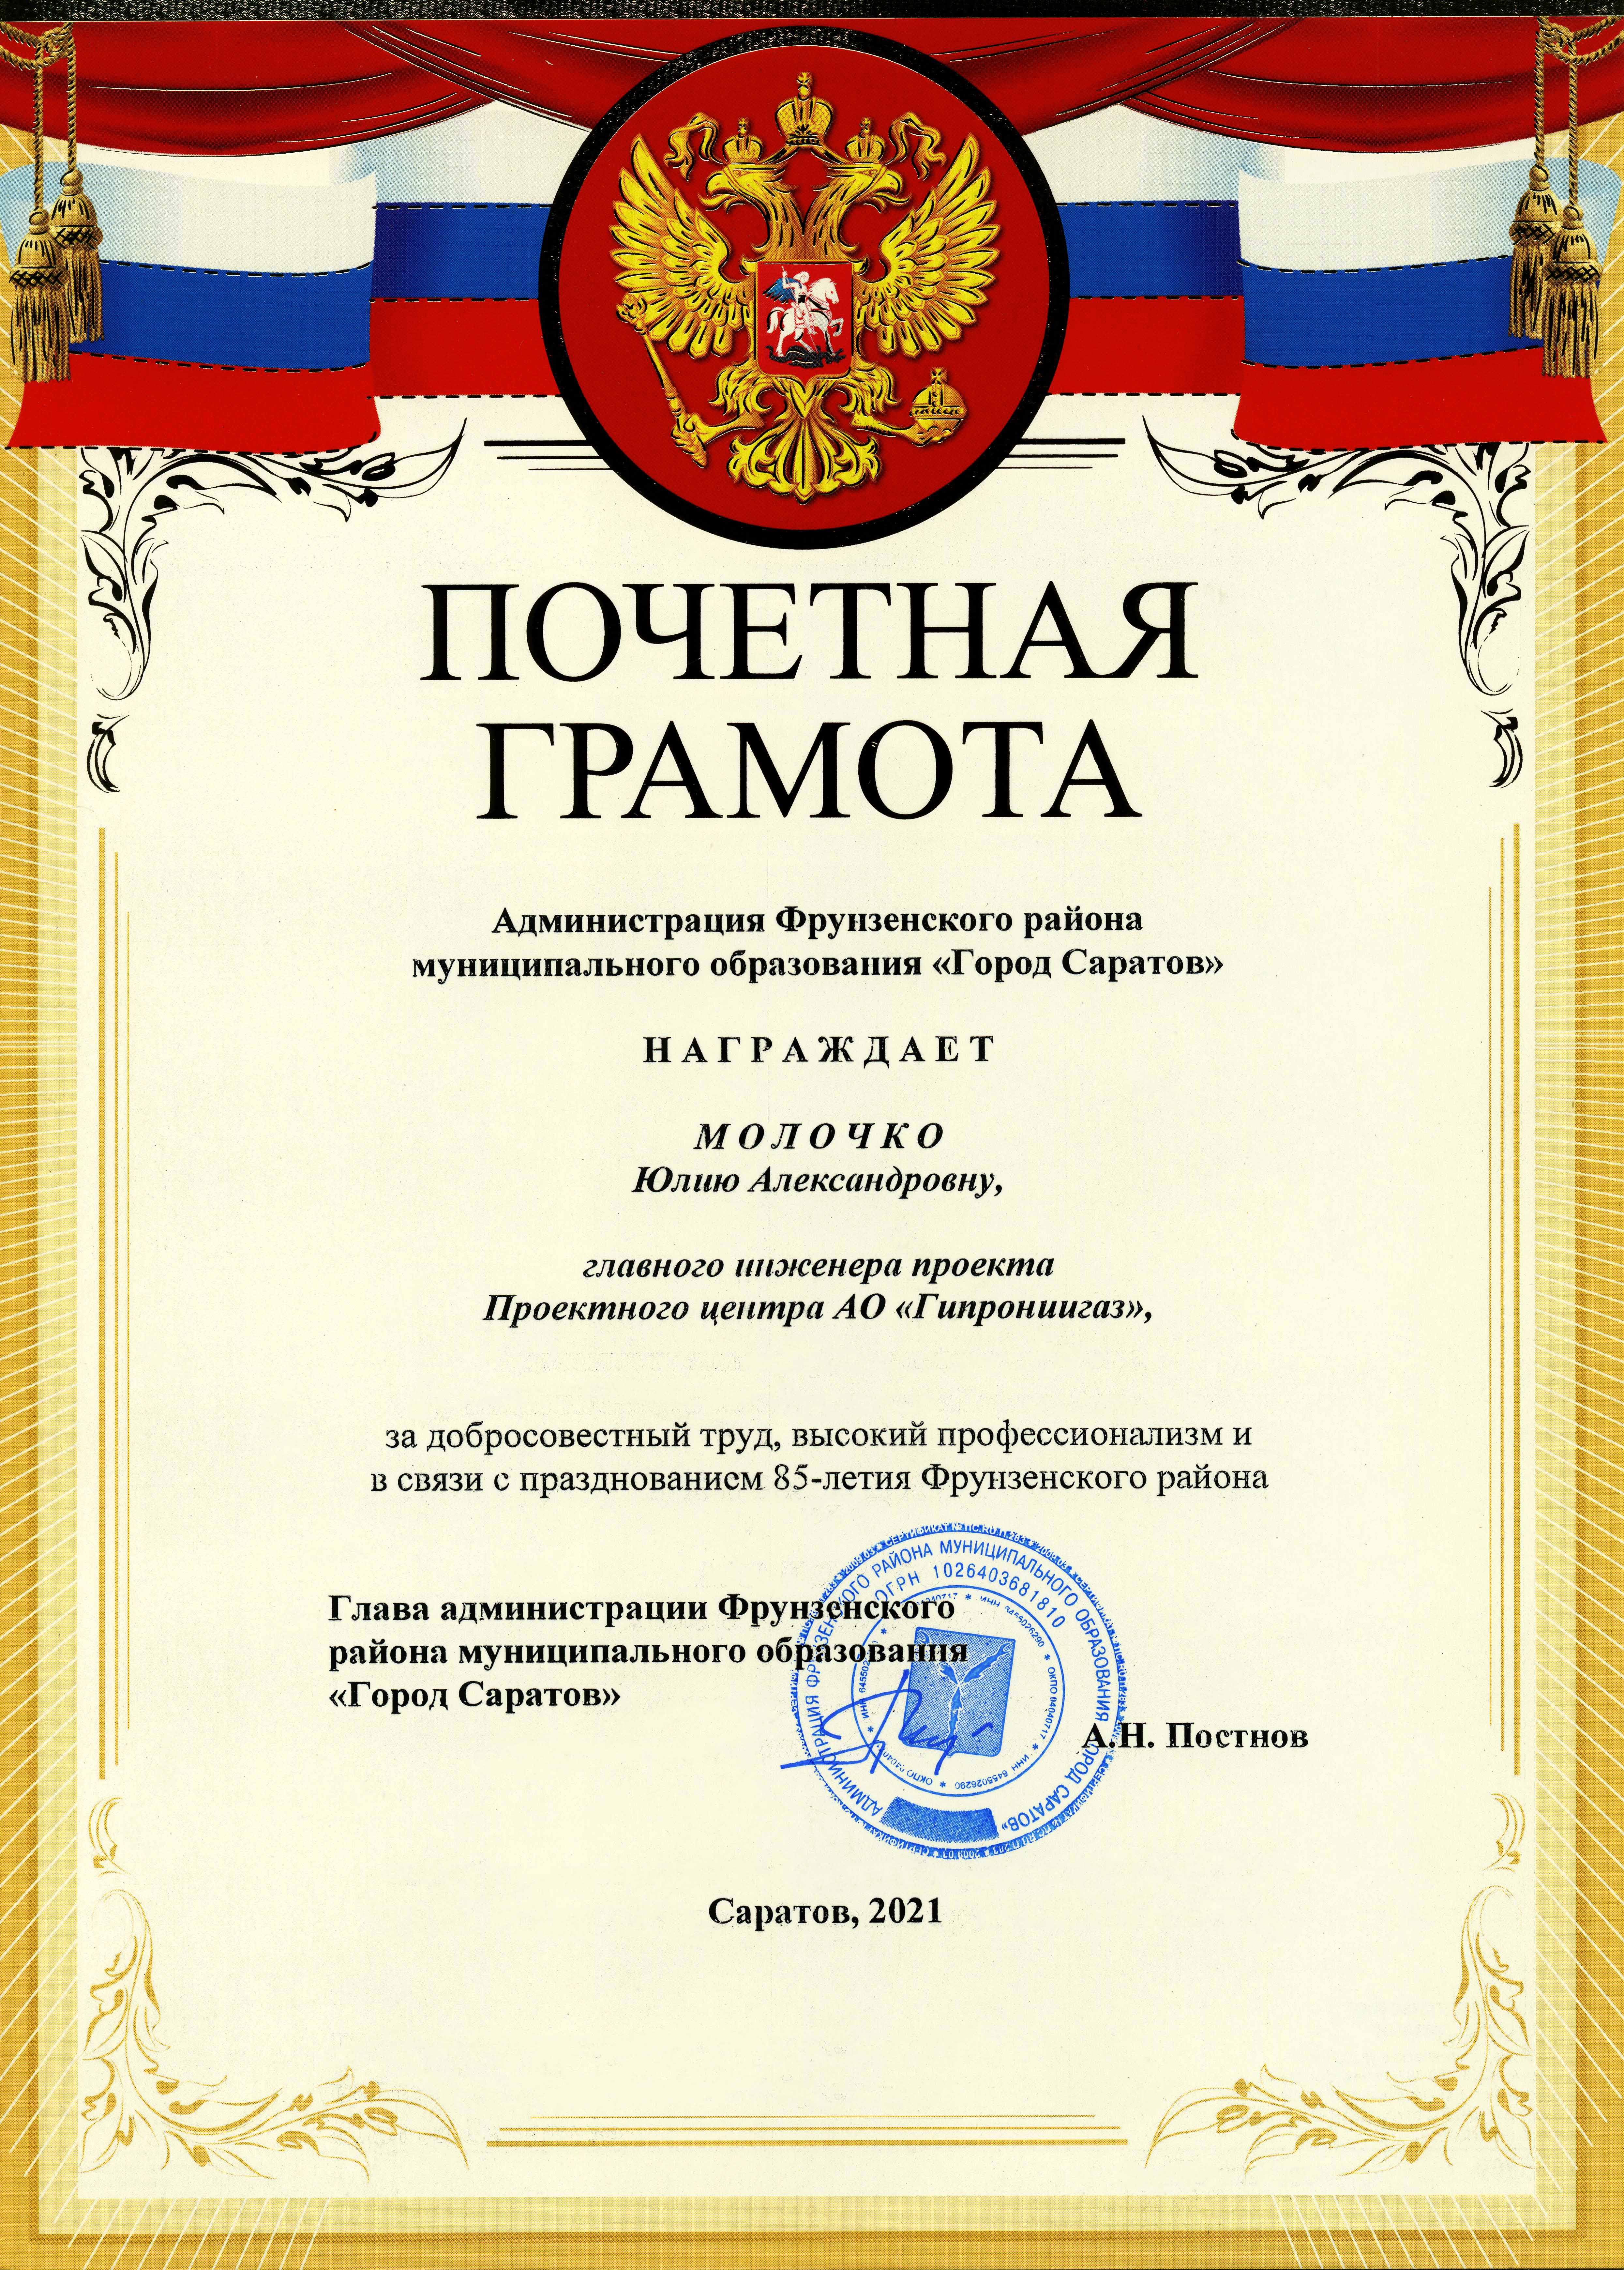 Главный инженер проекта АО «Гипрониигаз» награжден почетной грамотой Фрунзенского района МО «Город Саратов»